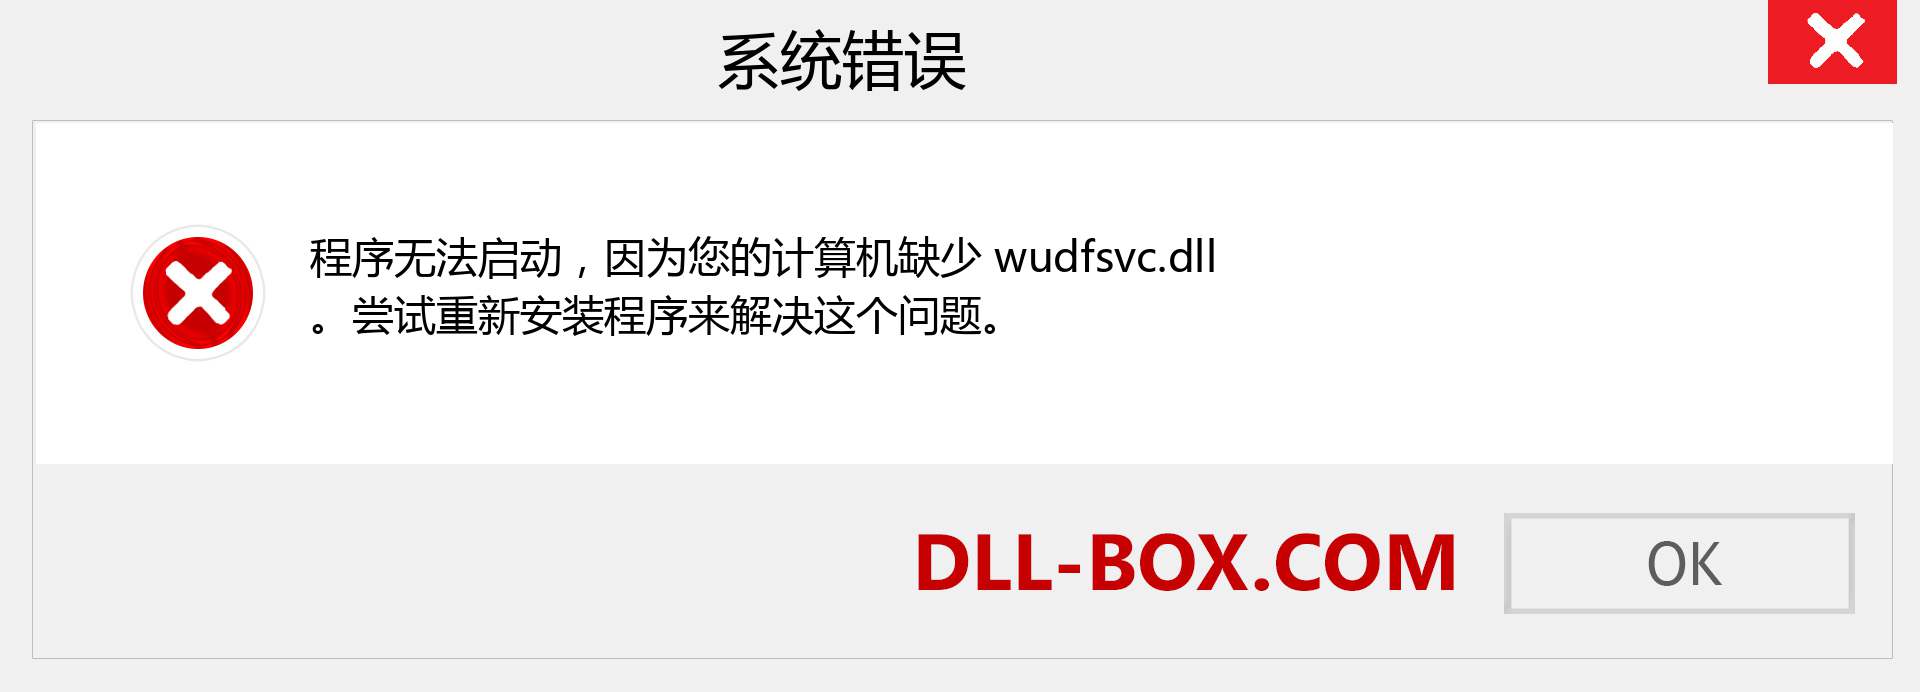 wudfsvc.dll 文件丢失？。 适用于 Windows 7、8、10 的下载 - 修复 Windows、照片、图像上的 wudfsvc dll 丢失错误